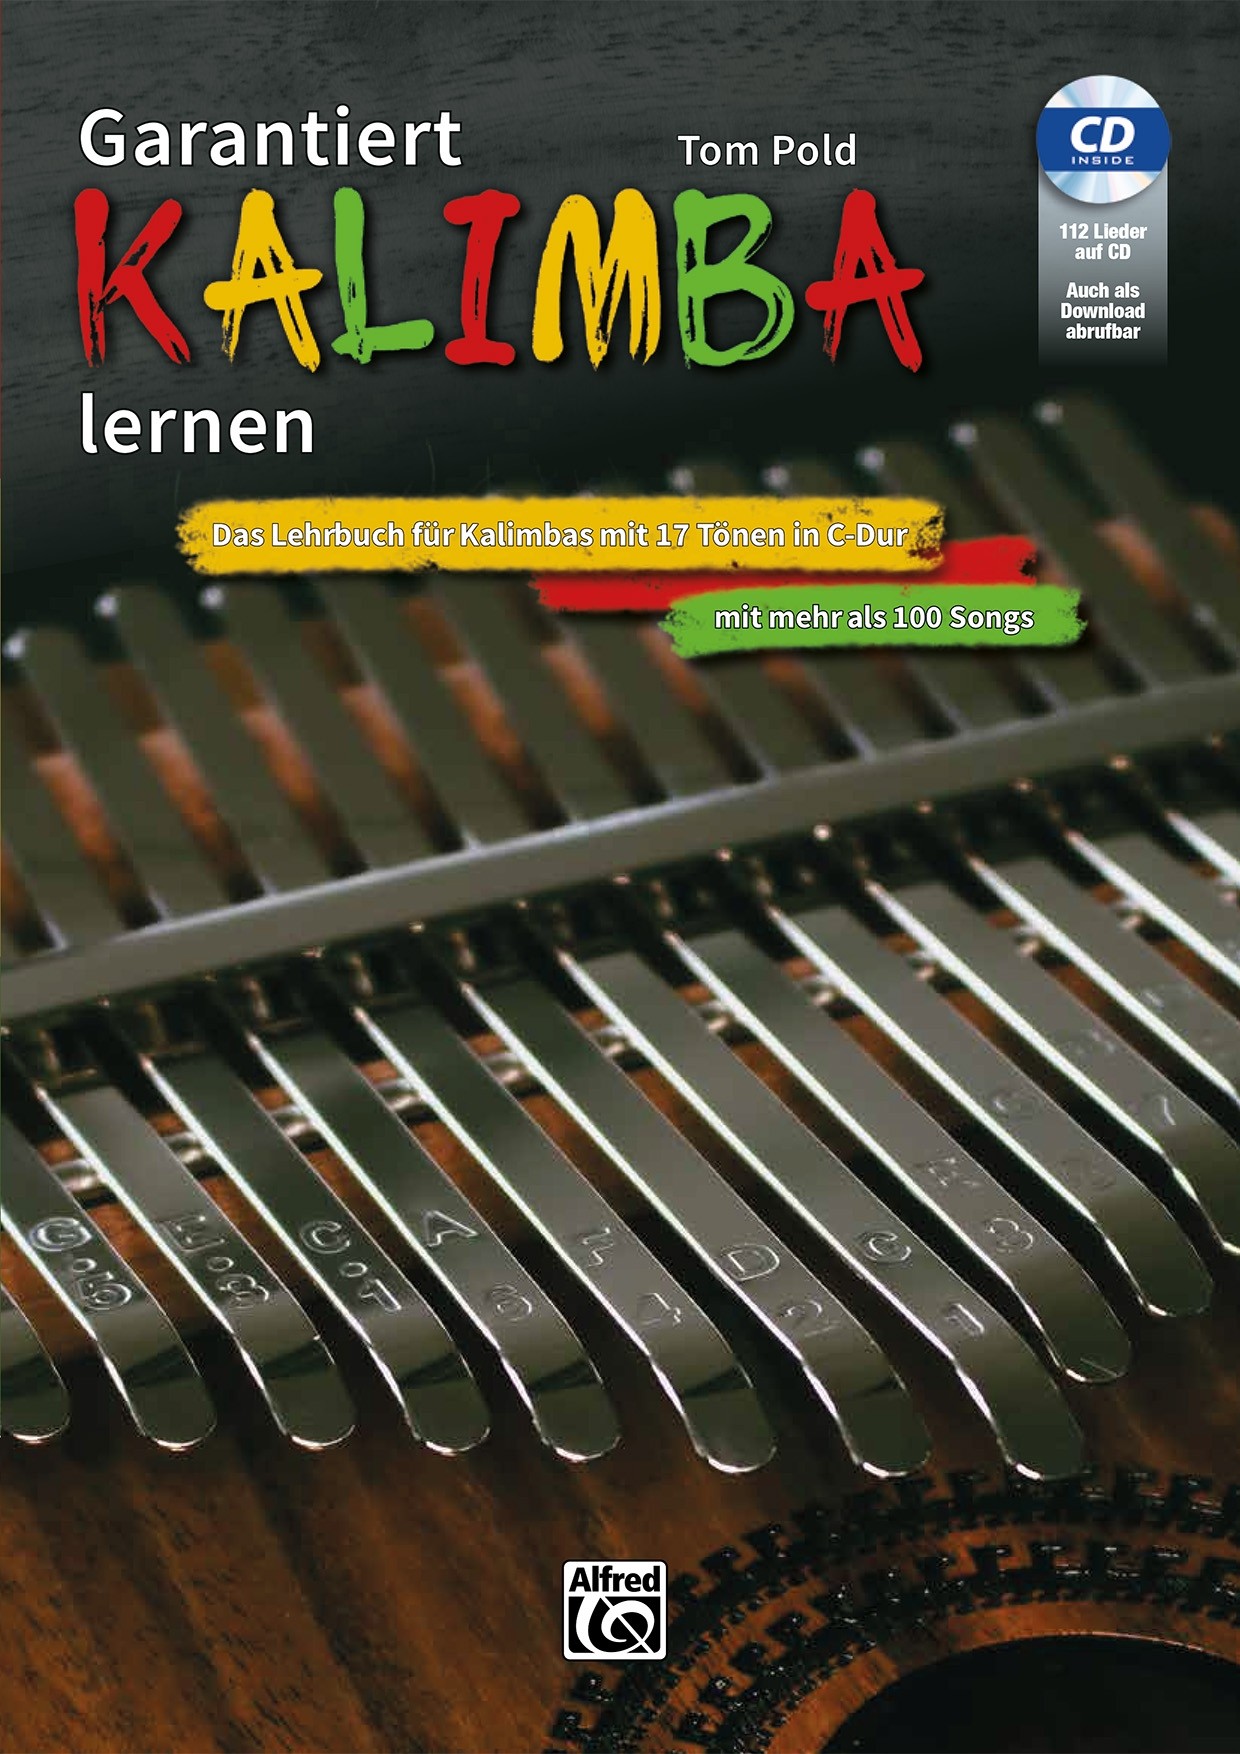 Garantiert Kalimba lernen (Bk/CD/Code)